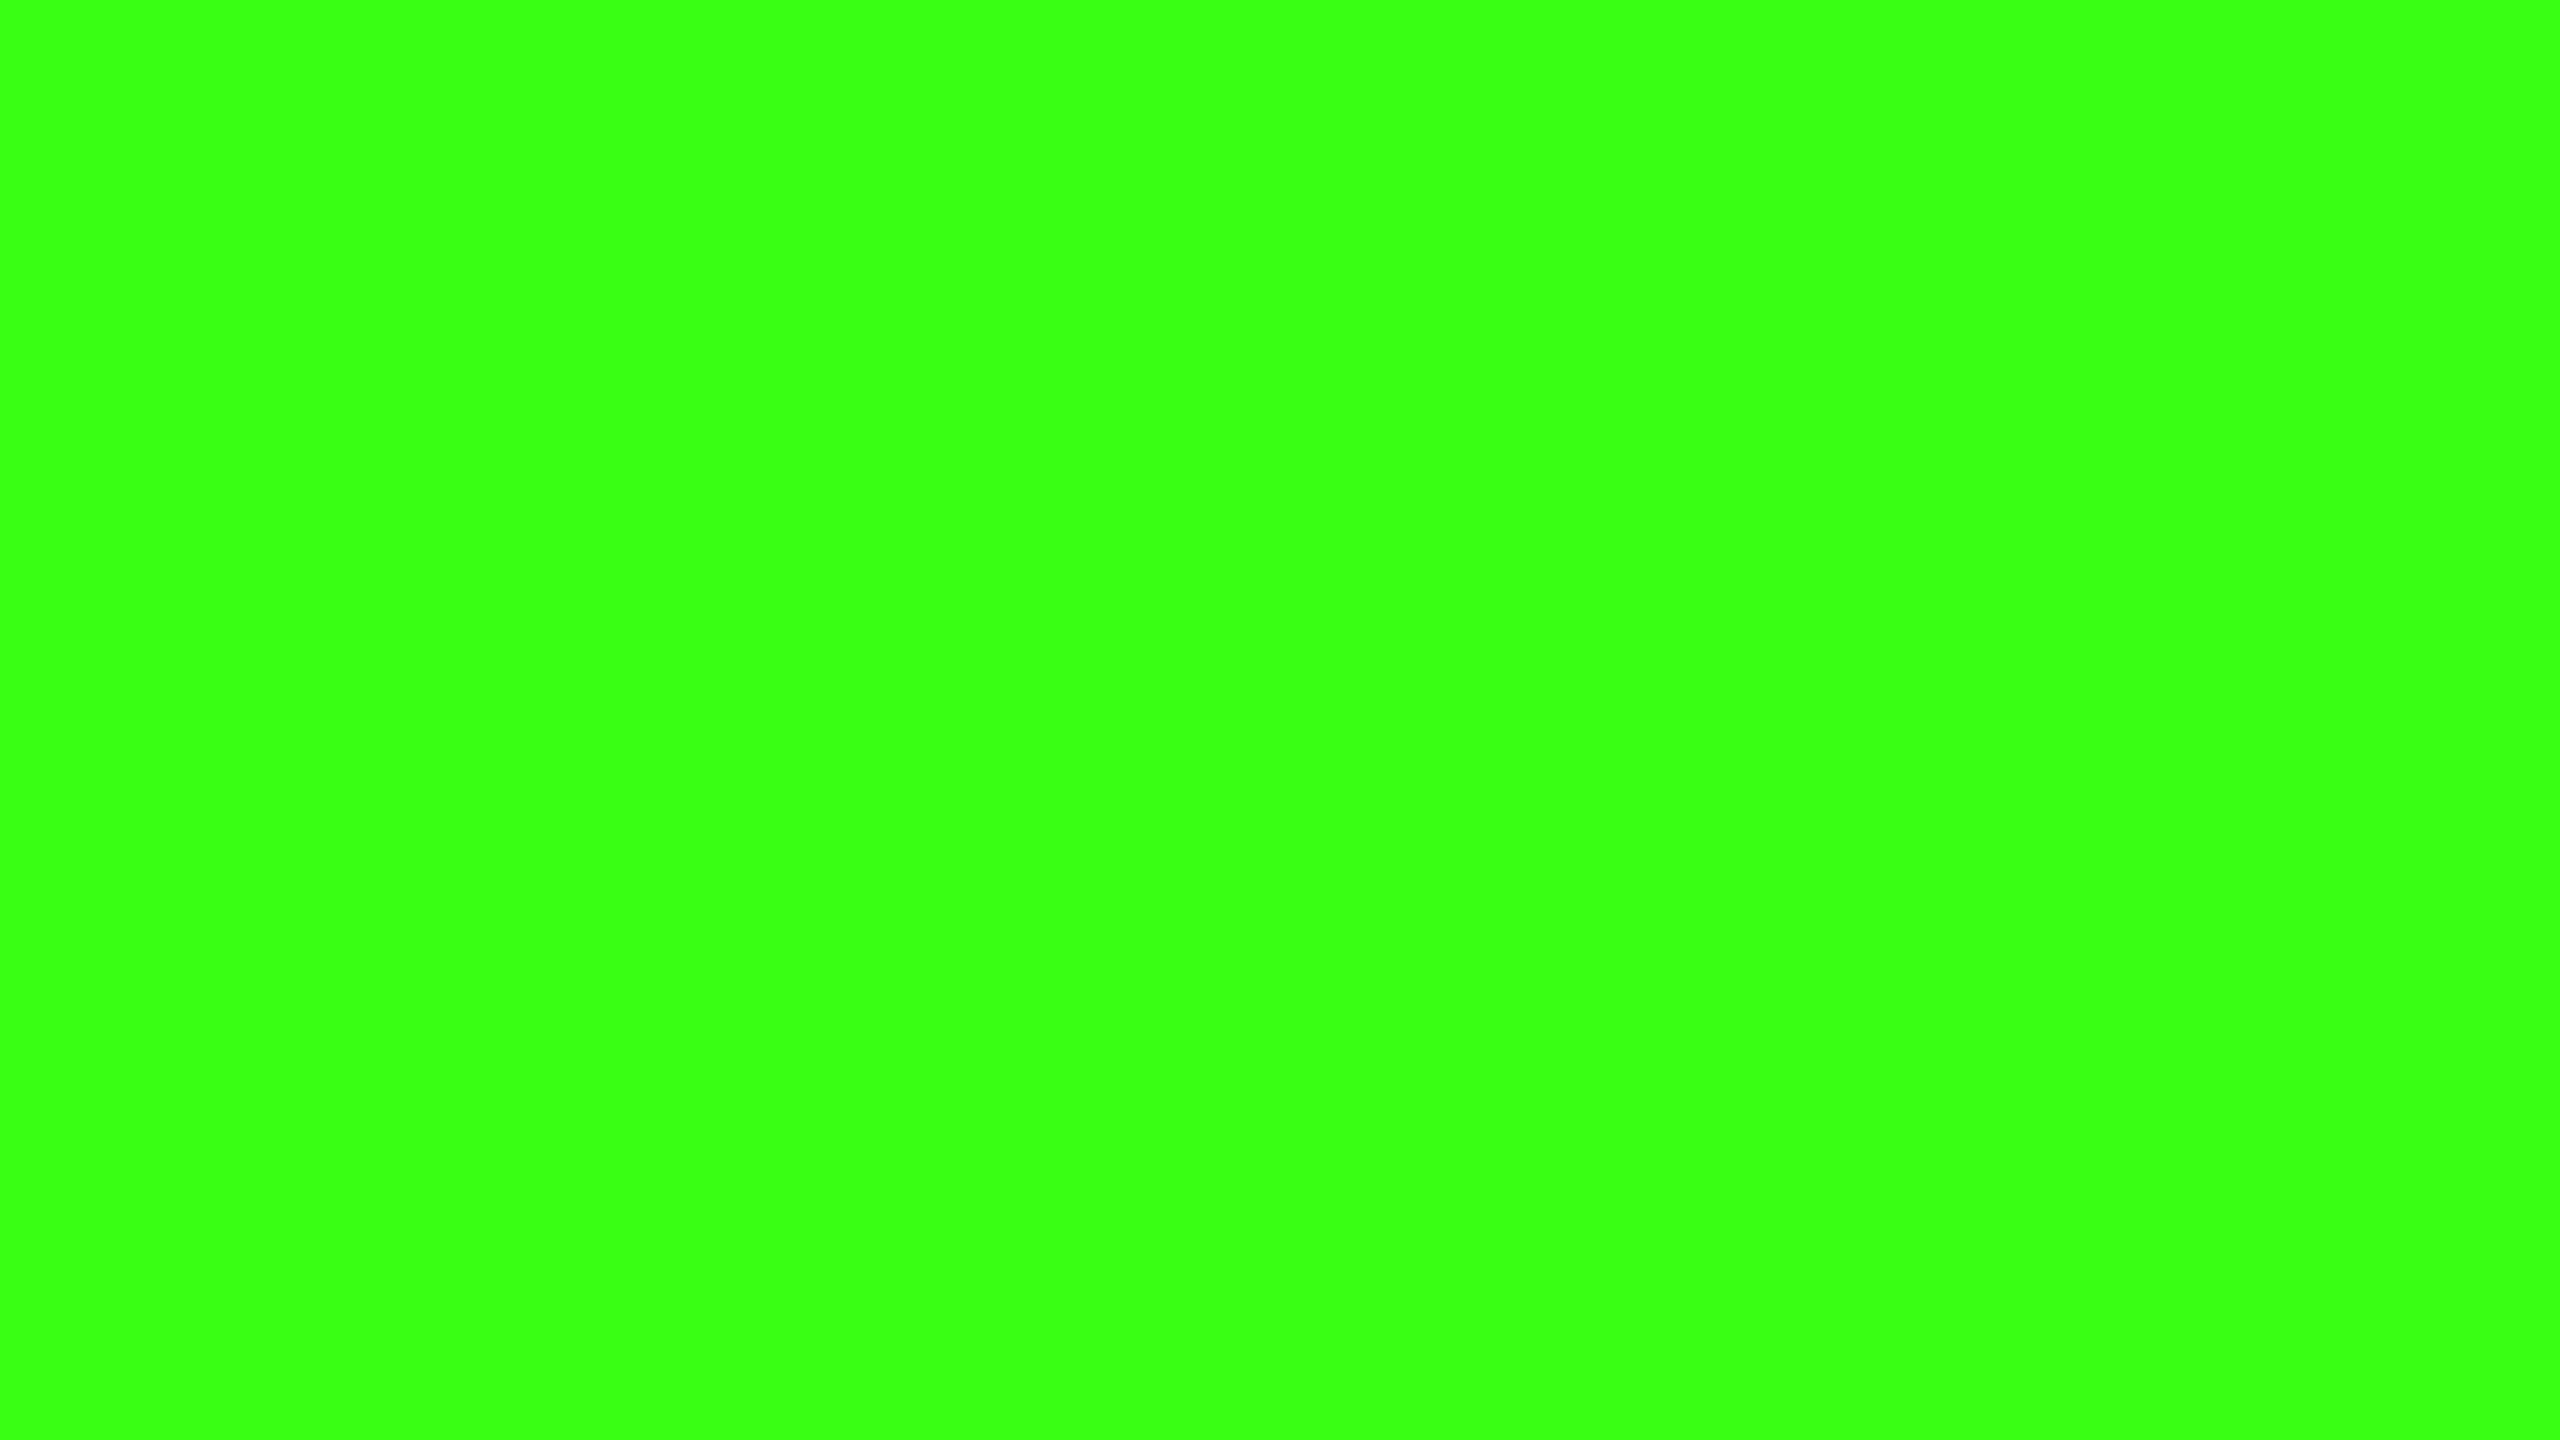 Fondos de pantalla verde neon - FondosMil